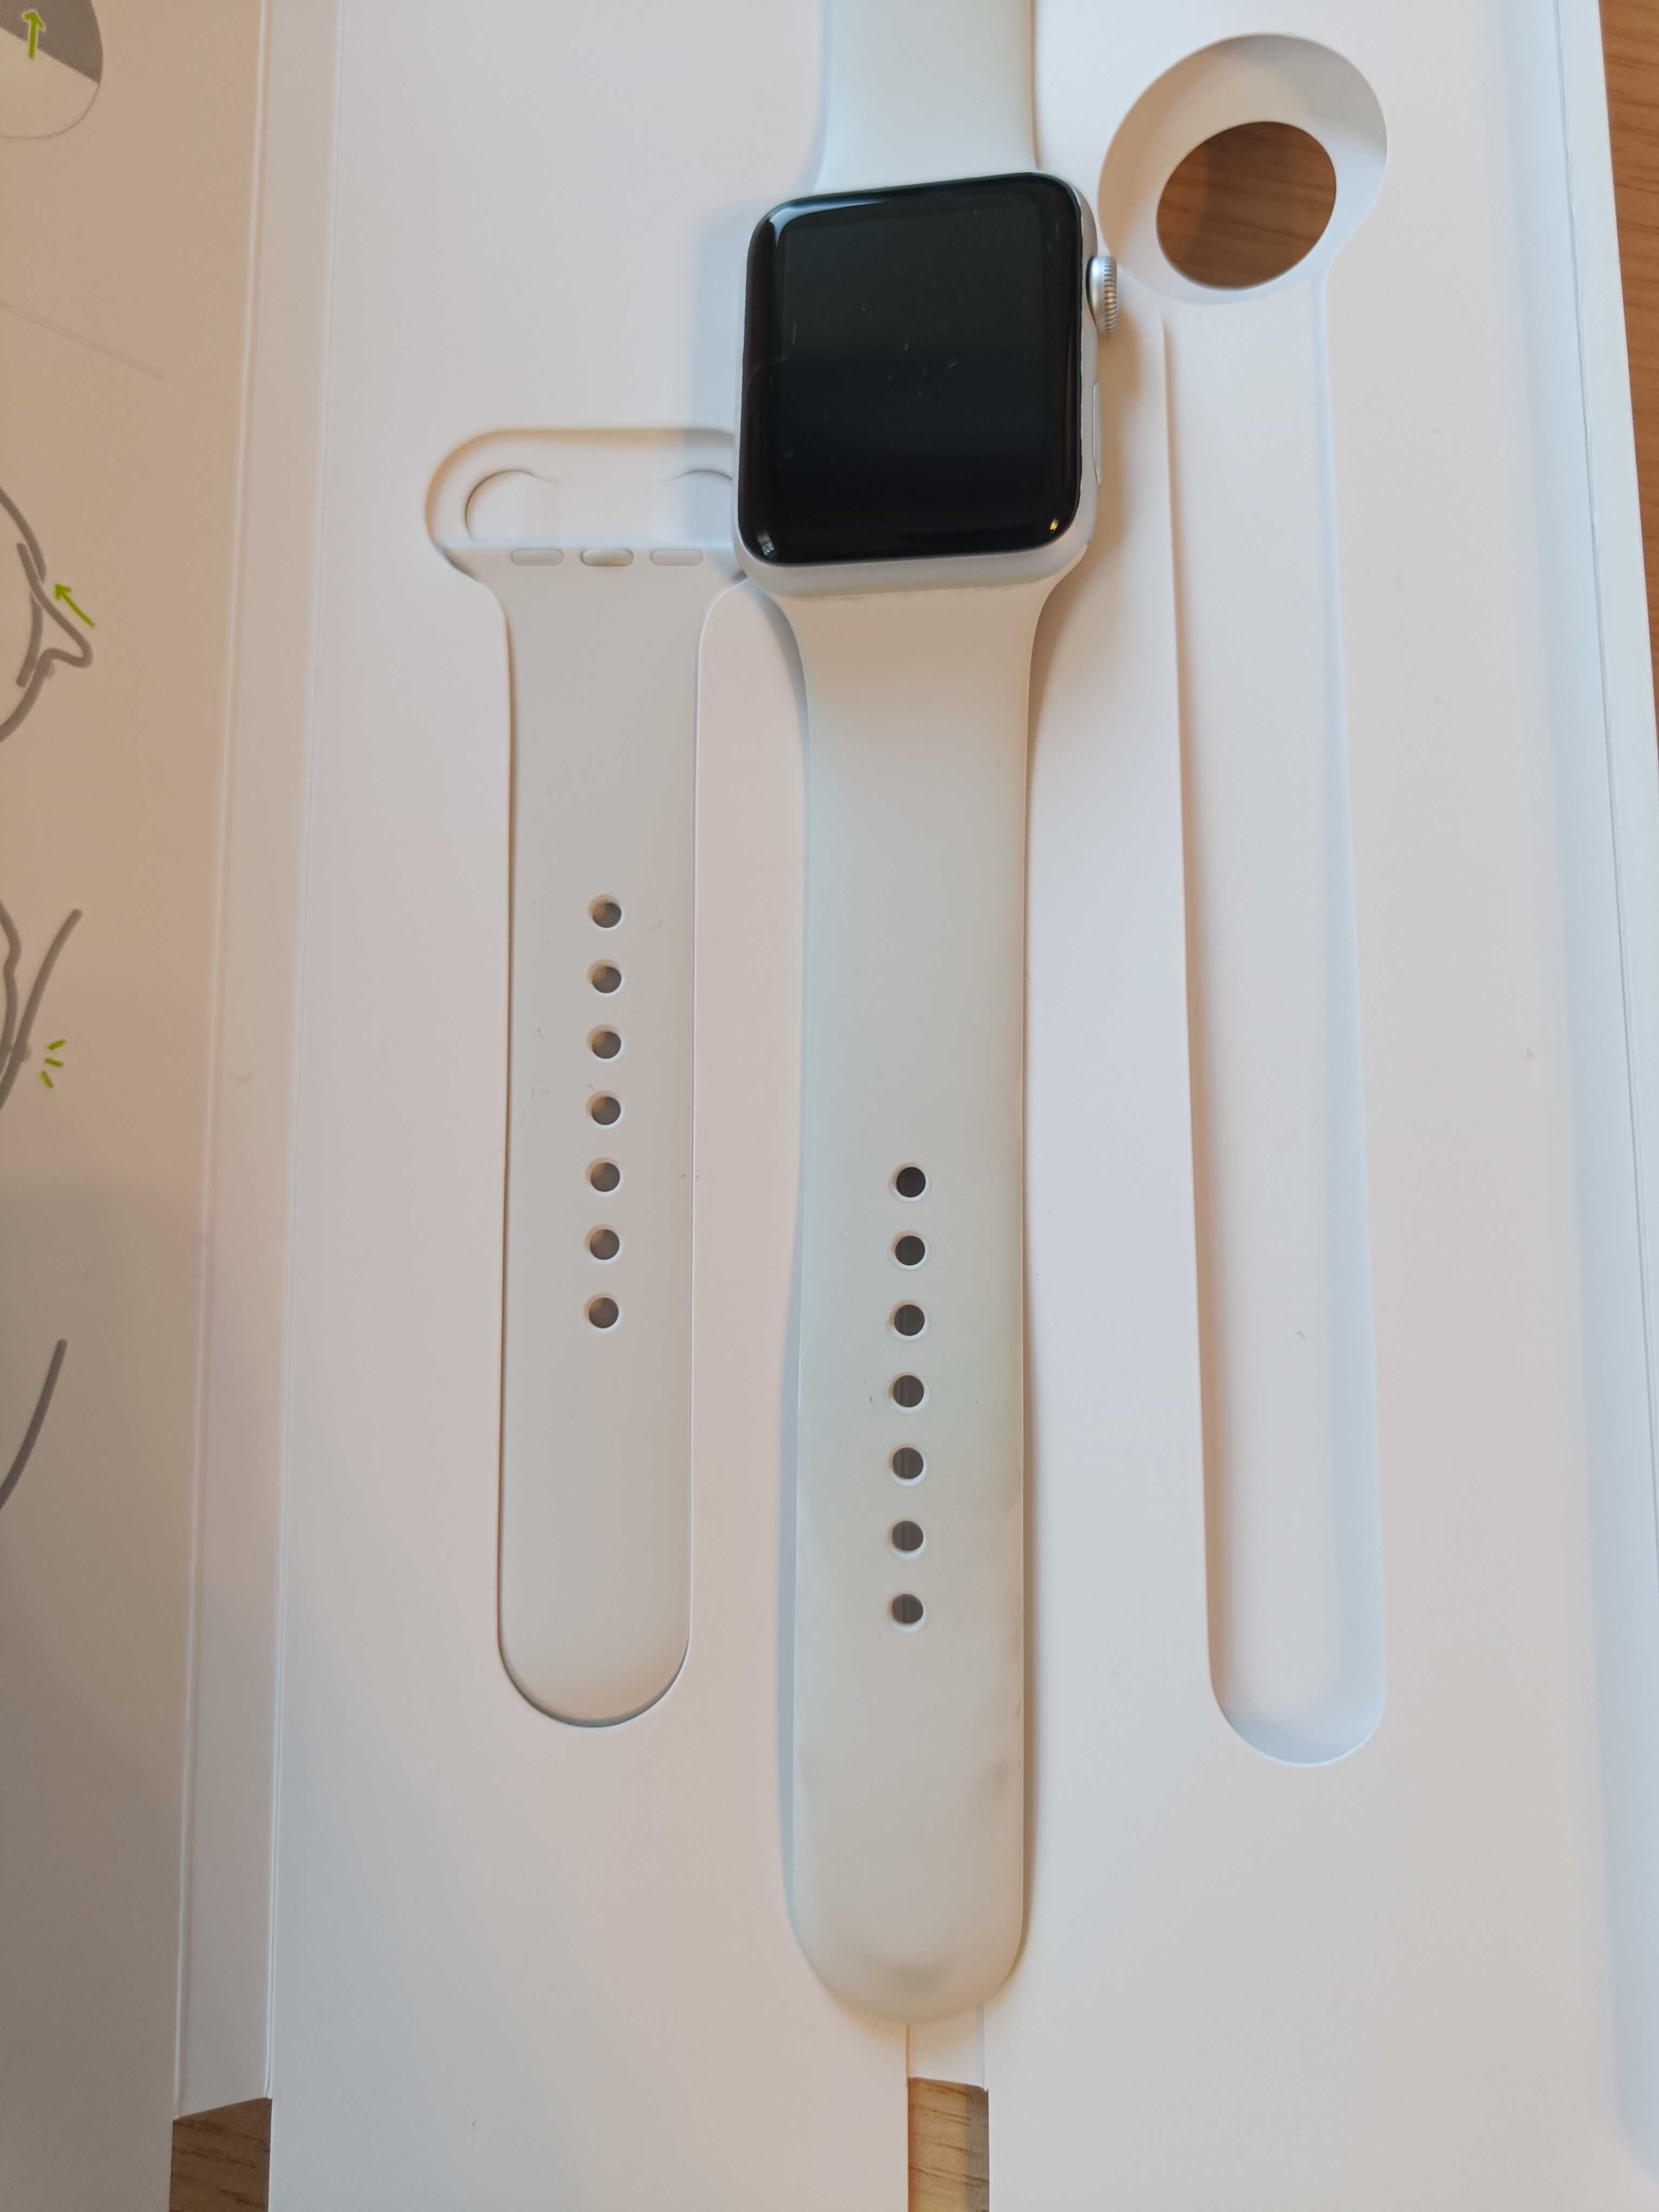 Apple Watch 3 с ново стъкло, пълен комплект